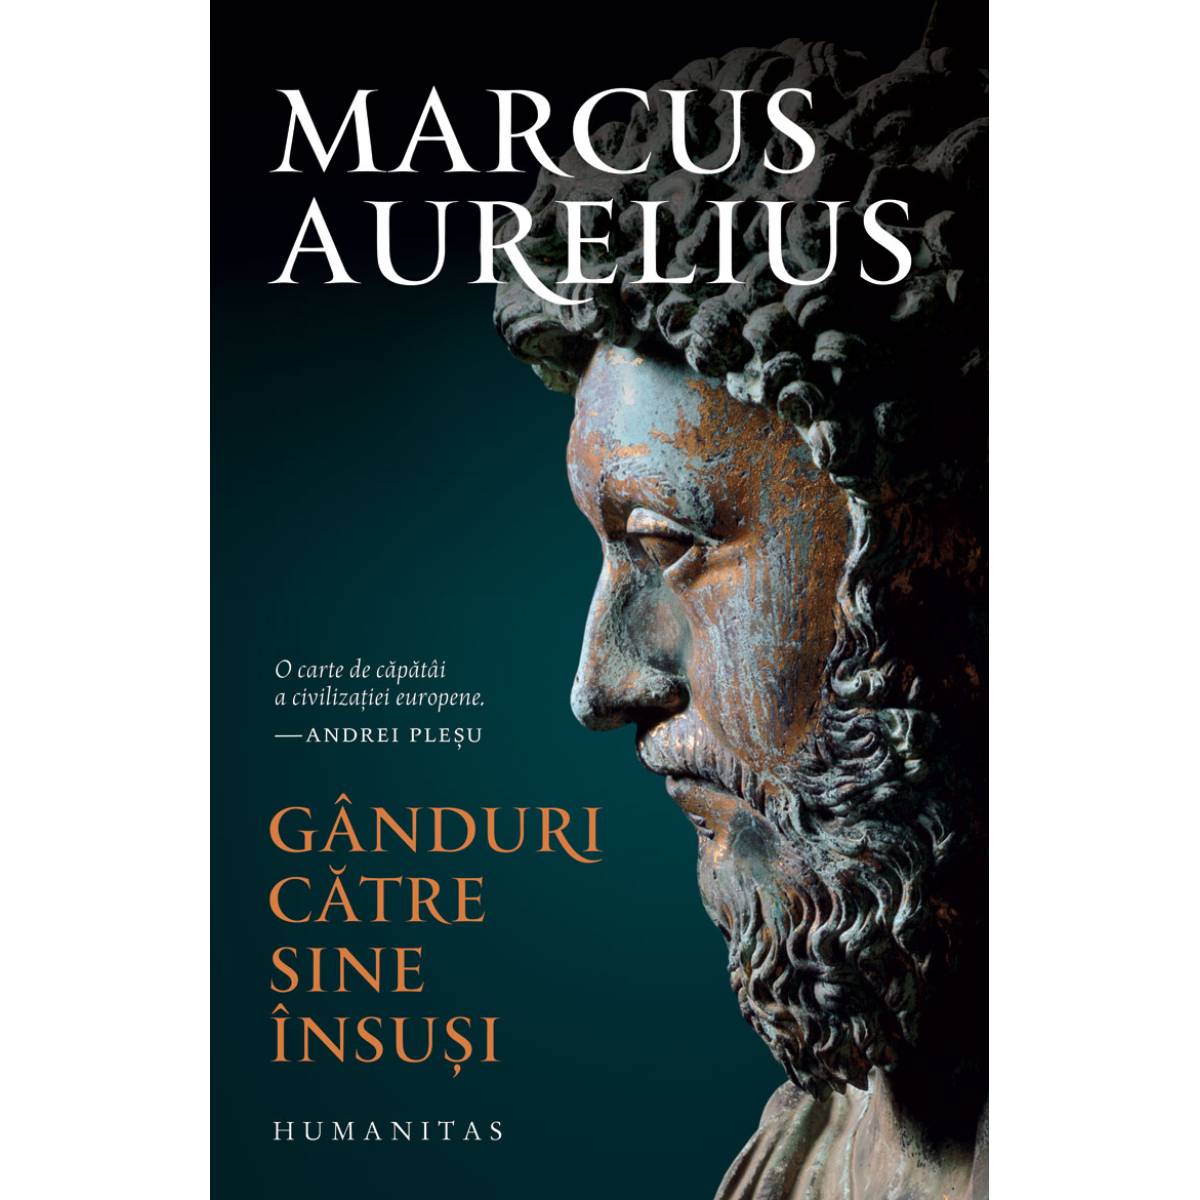 Ganduri catre sine insusi, Aurelius Marcus